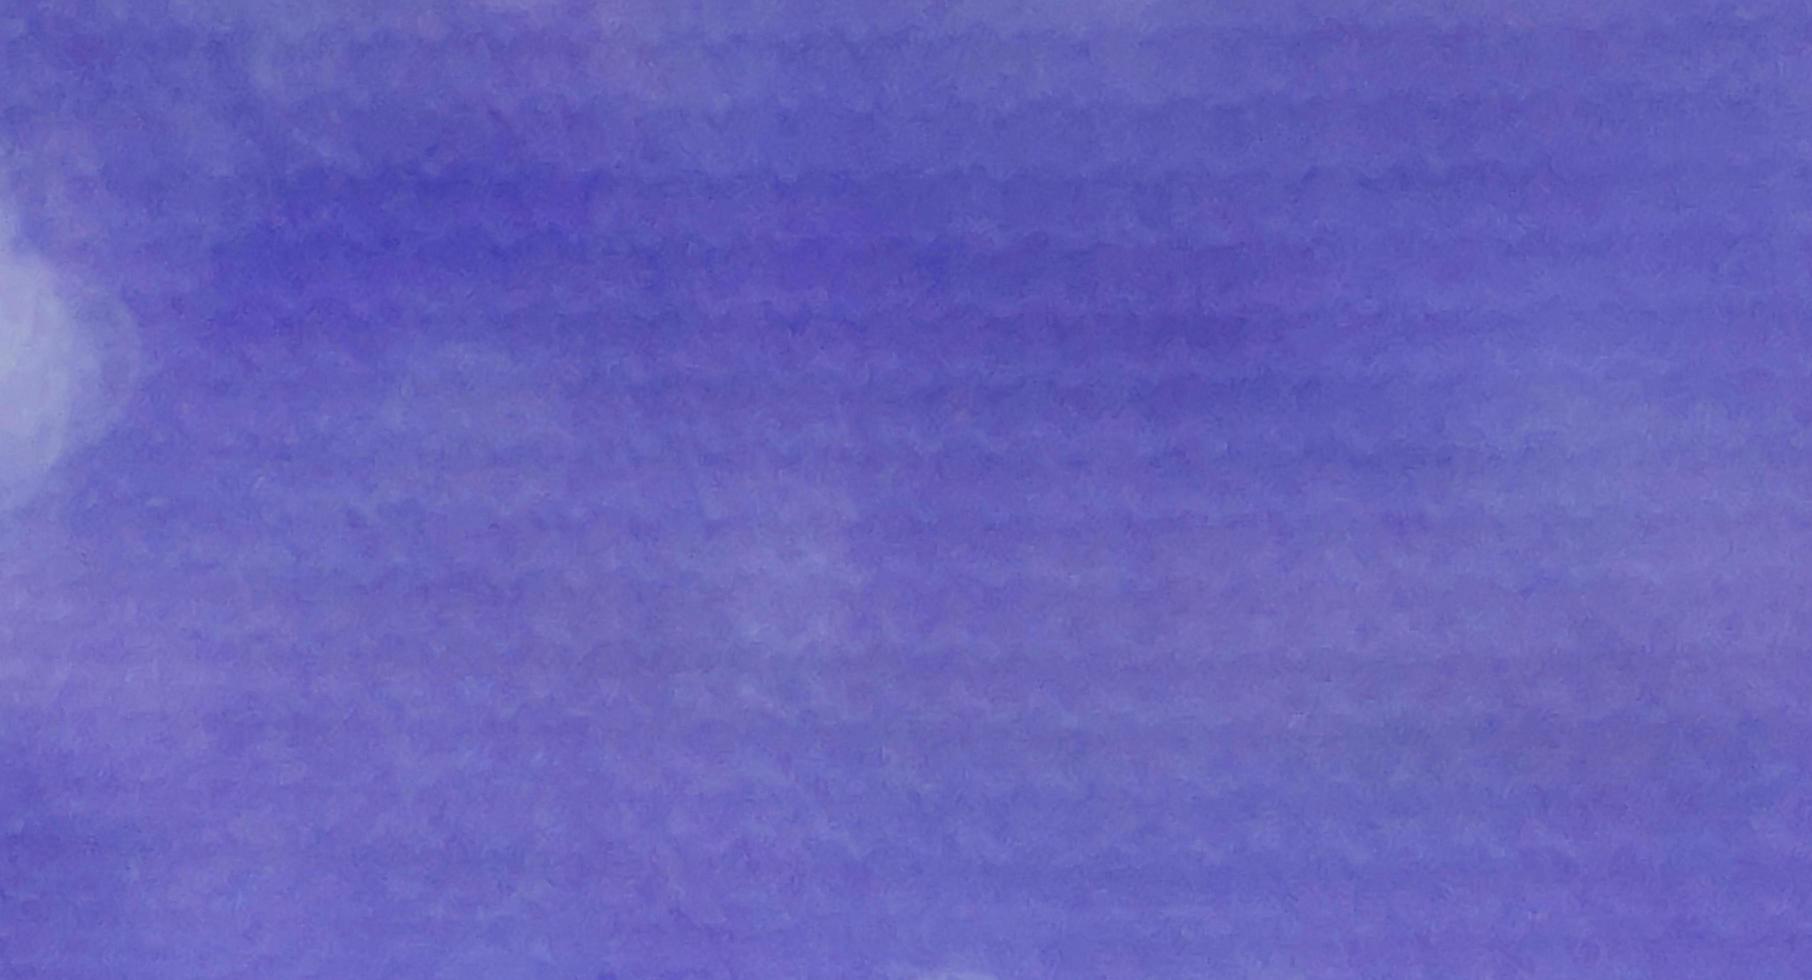 abstrakt verschwommen blau sehr peri pantone stoff papier textur hintergrund geeignet für die farbe des jahres 2022 grafikdesign dekoration fülltext werbung foto